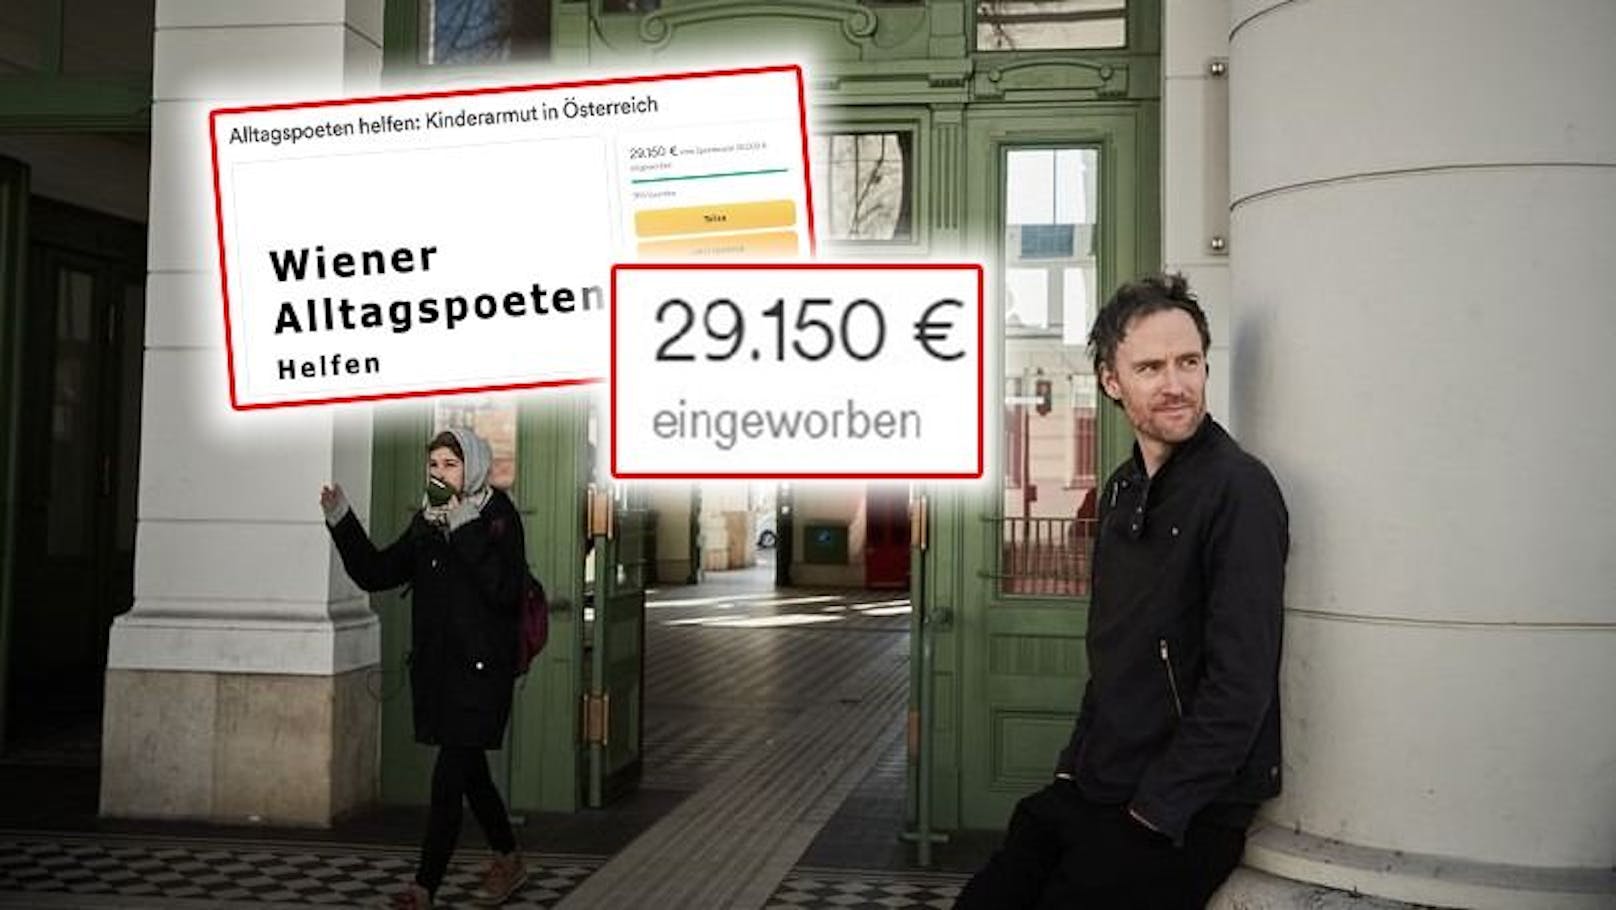 Wiener mit 30.000-€-Spendenaktion für arme Kinder